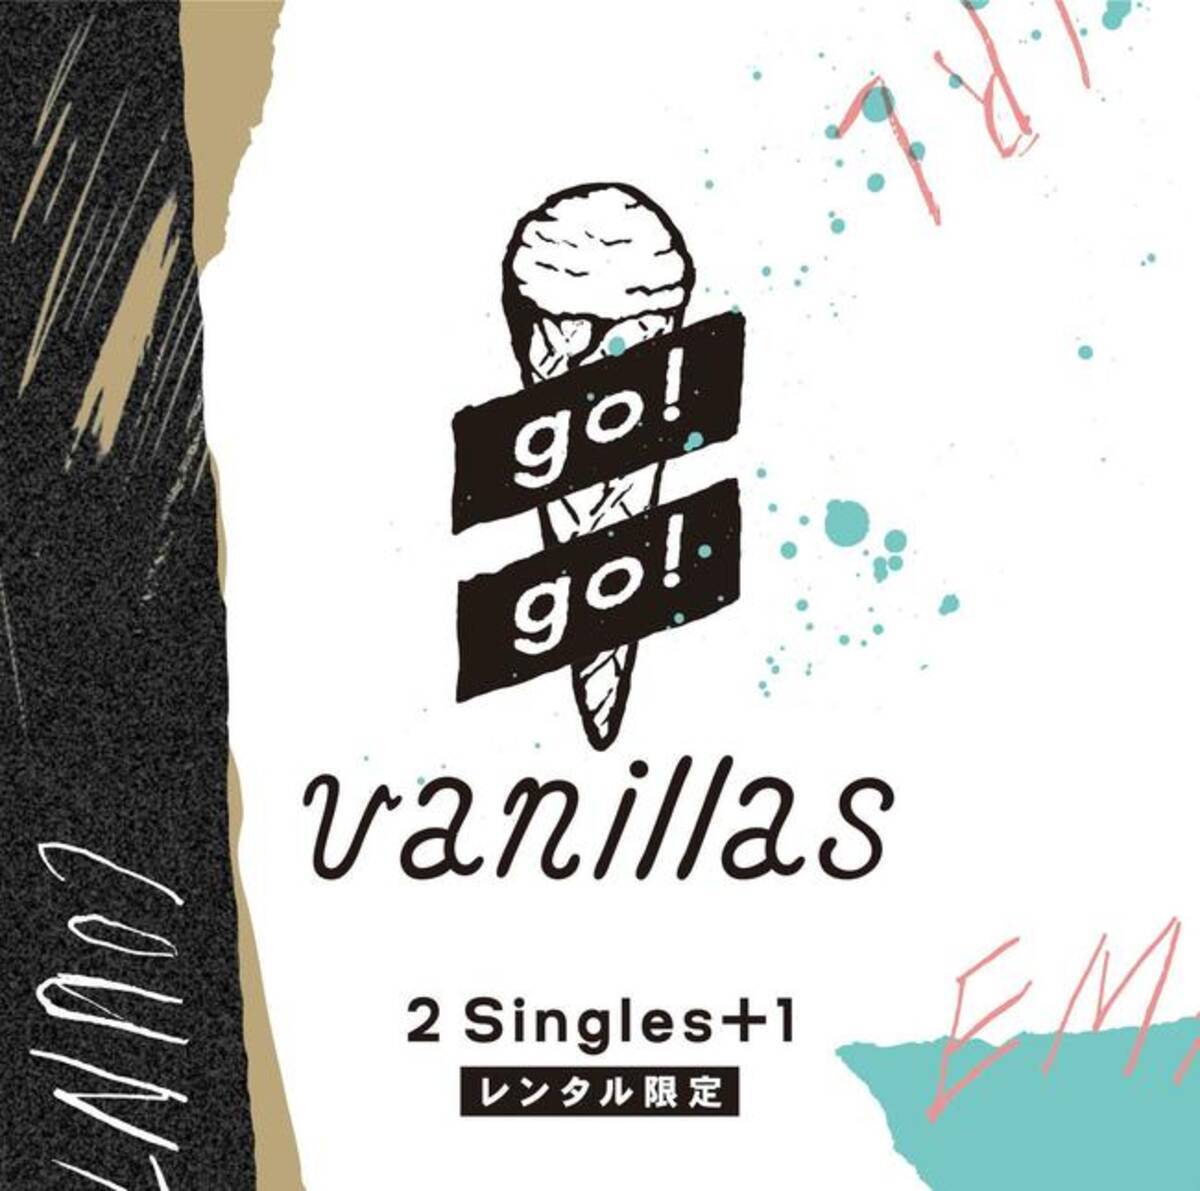 Go Go Vanillas 10月28日よりtsutaya限定アルバムのレンタルをスタート 2015年10月19日 エキサイトニュース